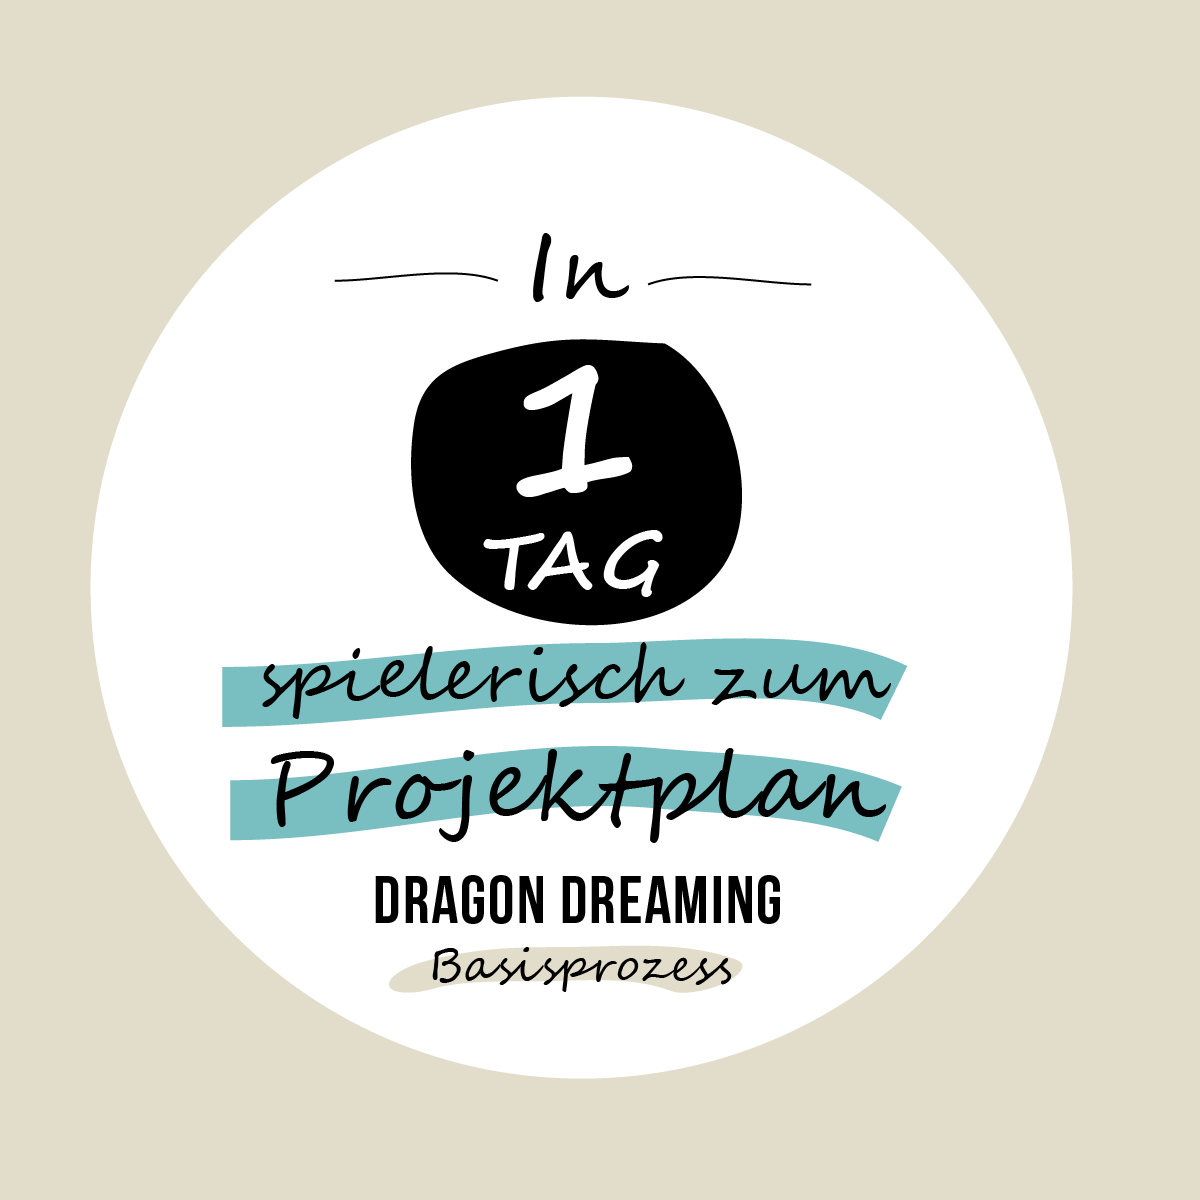 Printable: Vom Traum zum Plan – der Dragon Dreaming Basisprozess